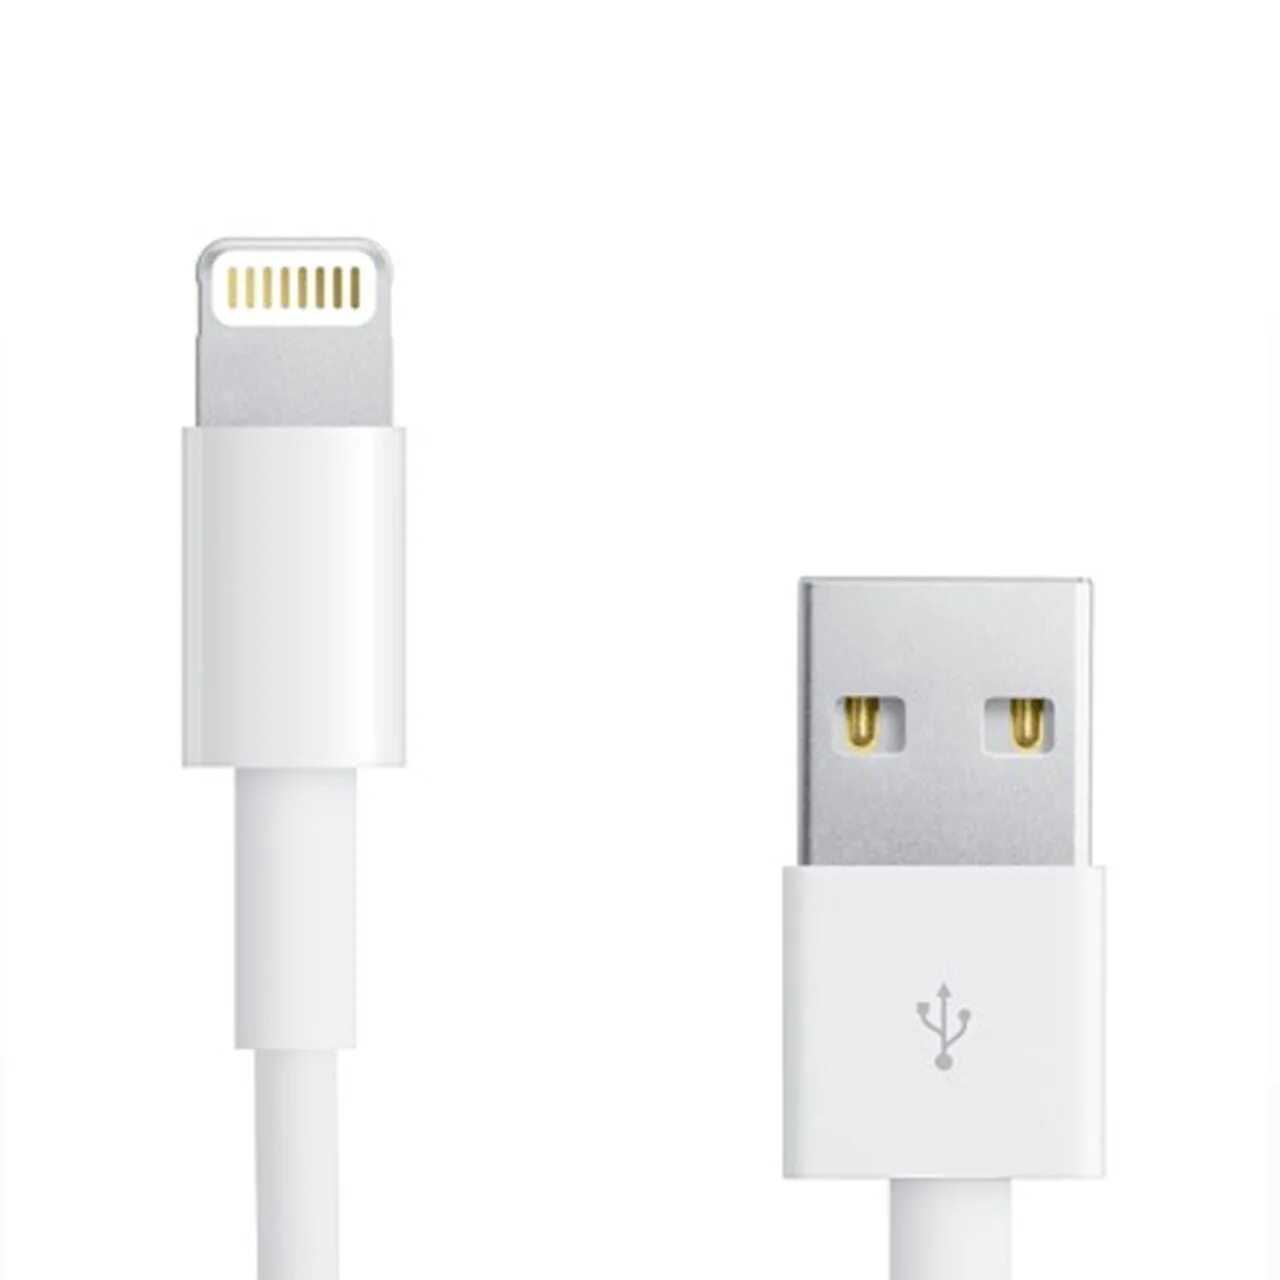 Кабель для айфона оригинал купить. Кабель Lightning Apple USB-C to Lightning Cable 1m. Кабель Apple USB - Lightning (md818zm/a) 1 м. Кабель Apple USB-Lightning, 2м, белый (md819zm/a). Apple USB-C to Lightning Cable (1 m).